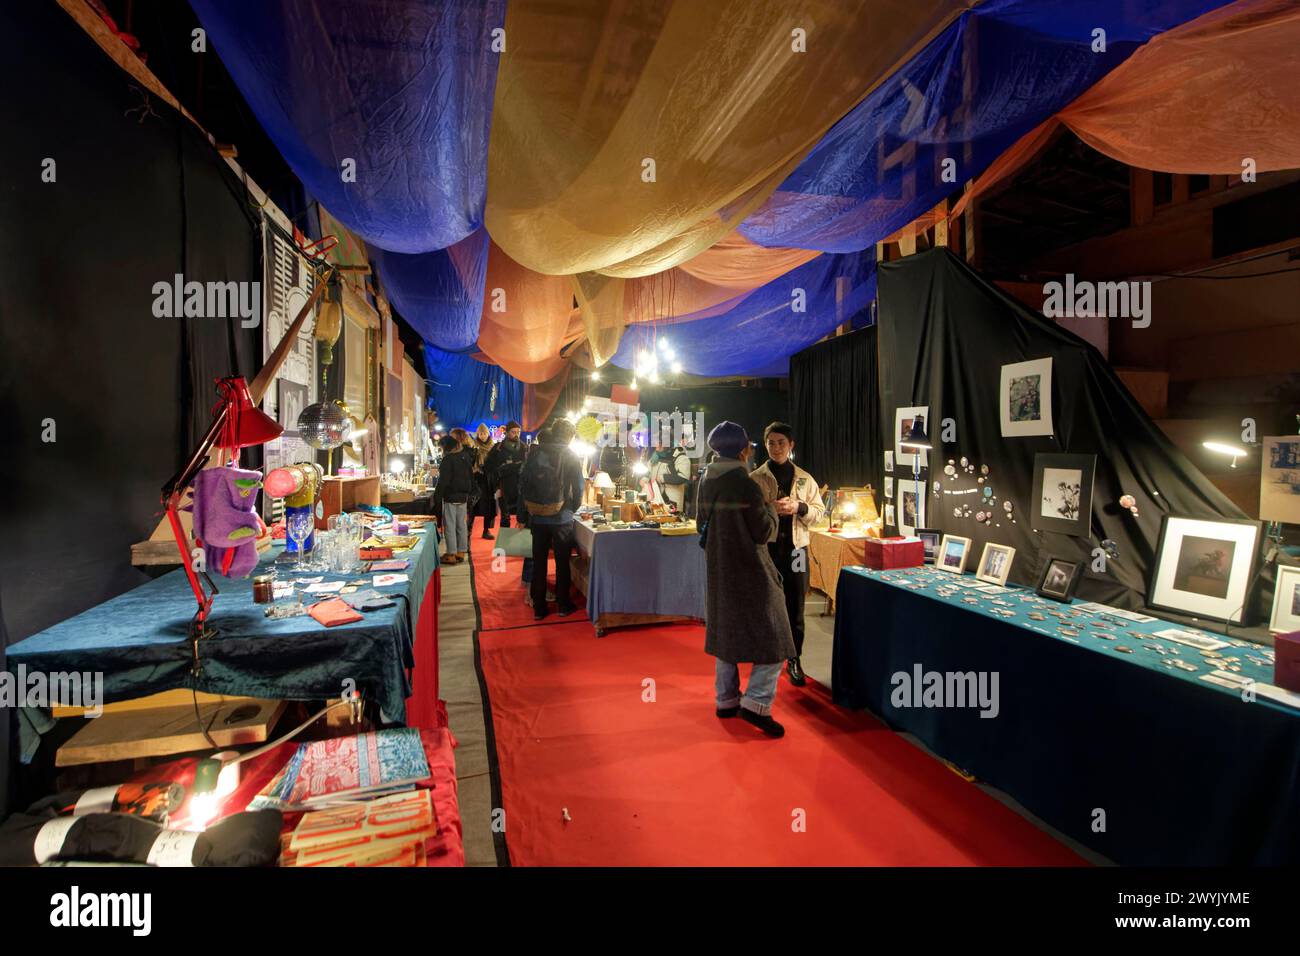 France, Bas Rhin, Strasbourg, capitale de Noël, la Semencerie (espace de création artistique), marché artisanal de Noël des artistes alternatifs Banque D'Images